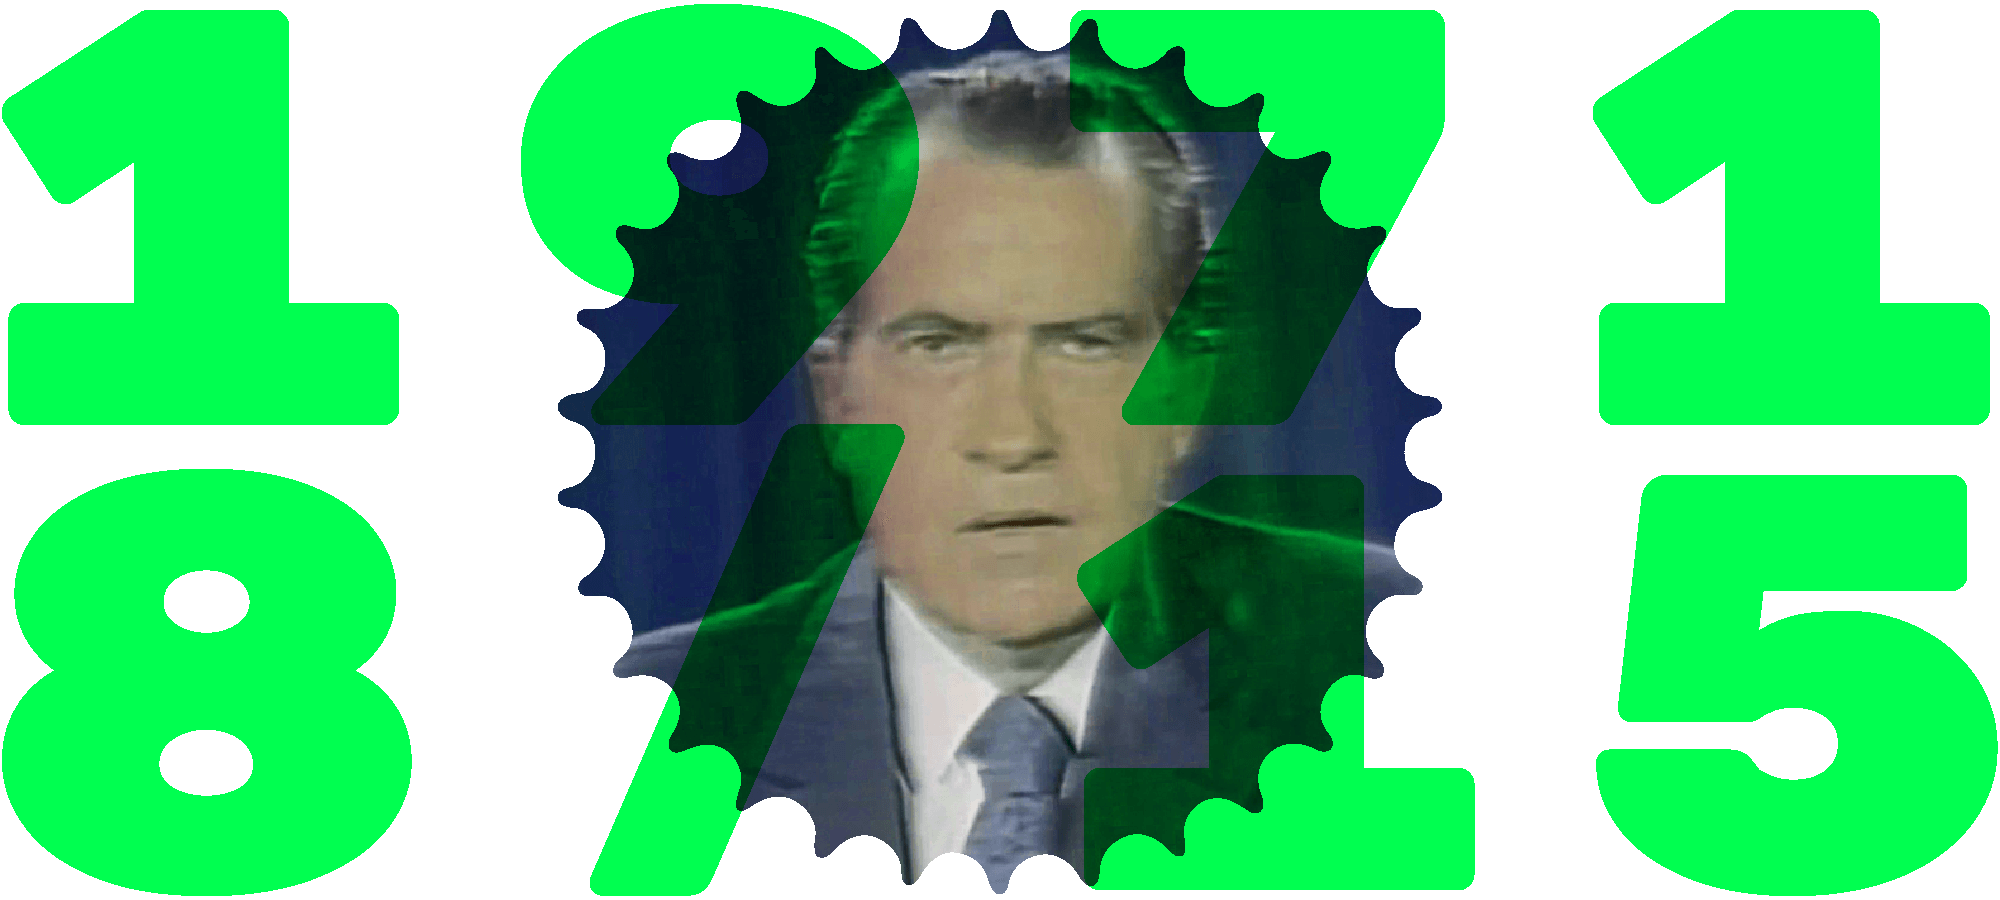 Header image - Richard Nixon on TV, 15th August 1971